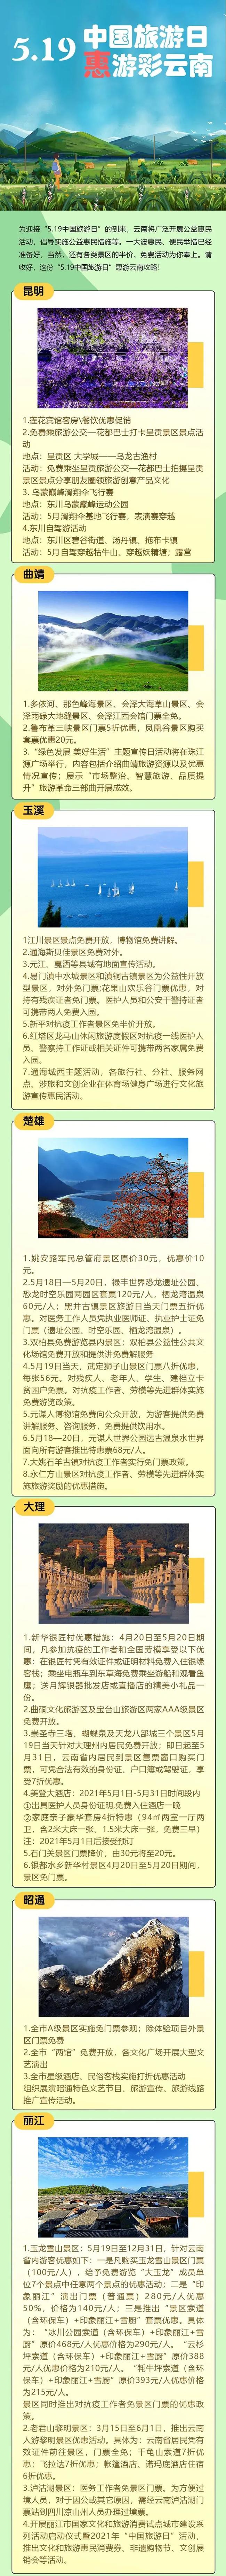 2021年519旅游日云南部分景区旅游福利 丽江文旅消费券领取指南